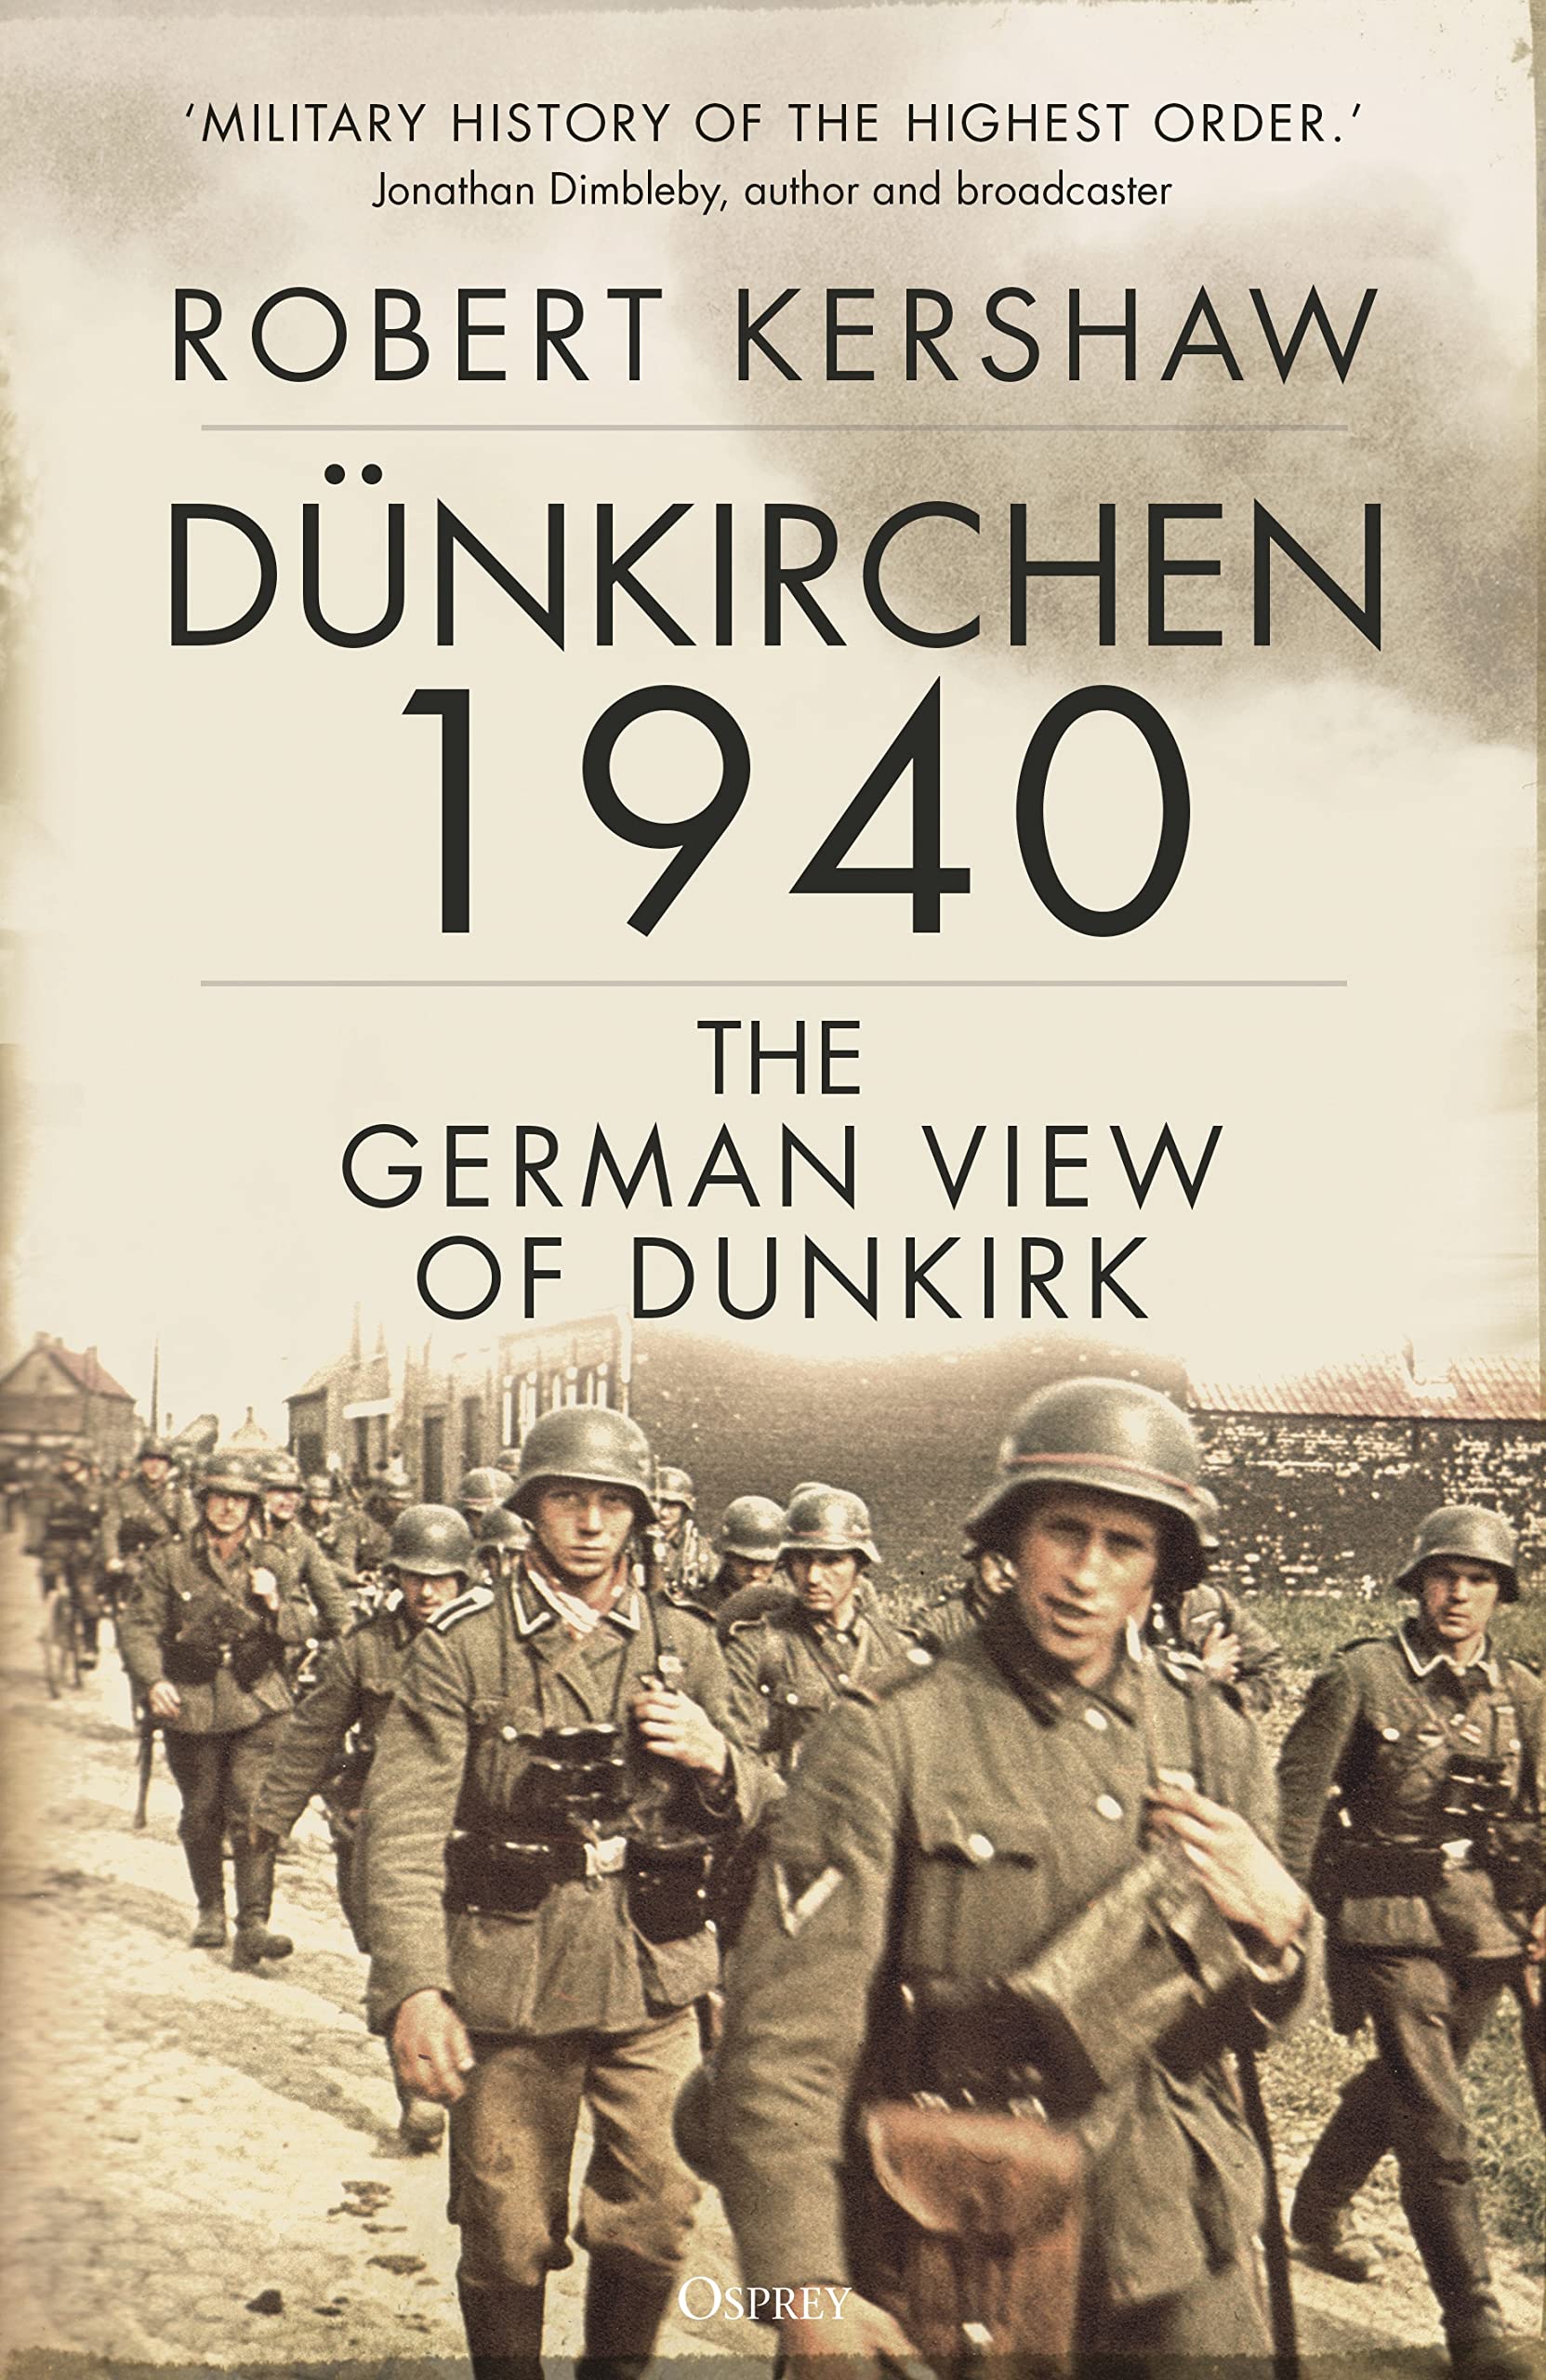 Dunkirchen 1940 by Robert Kershaw